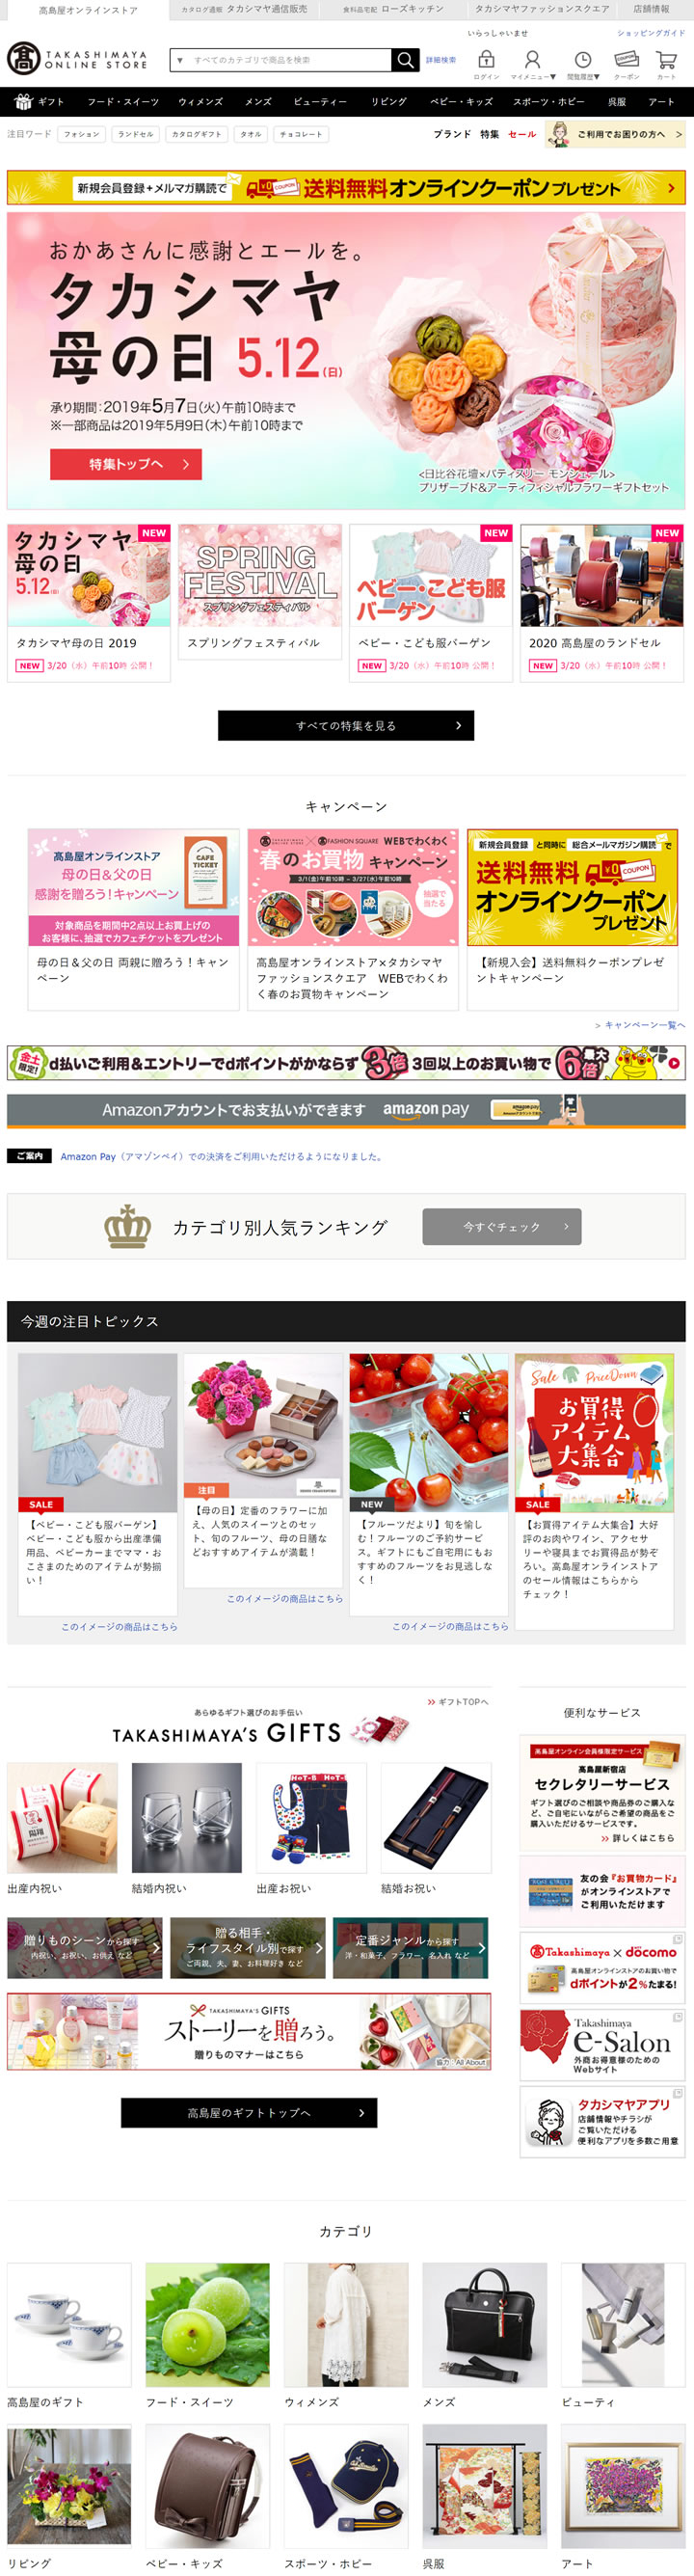 日本奢华购物之旅！TAKASHIMAYA：高岛屋百货的网上天堂